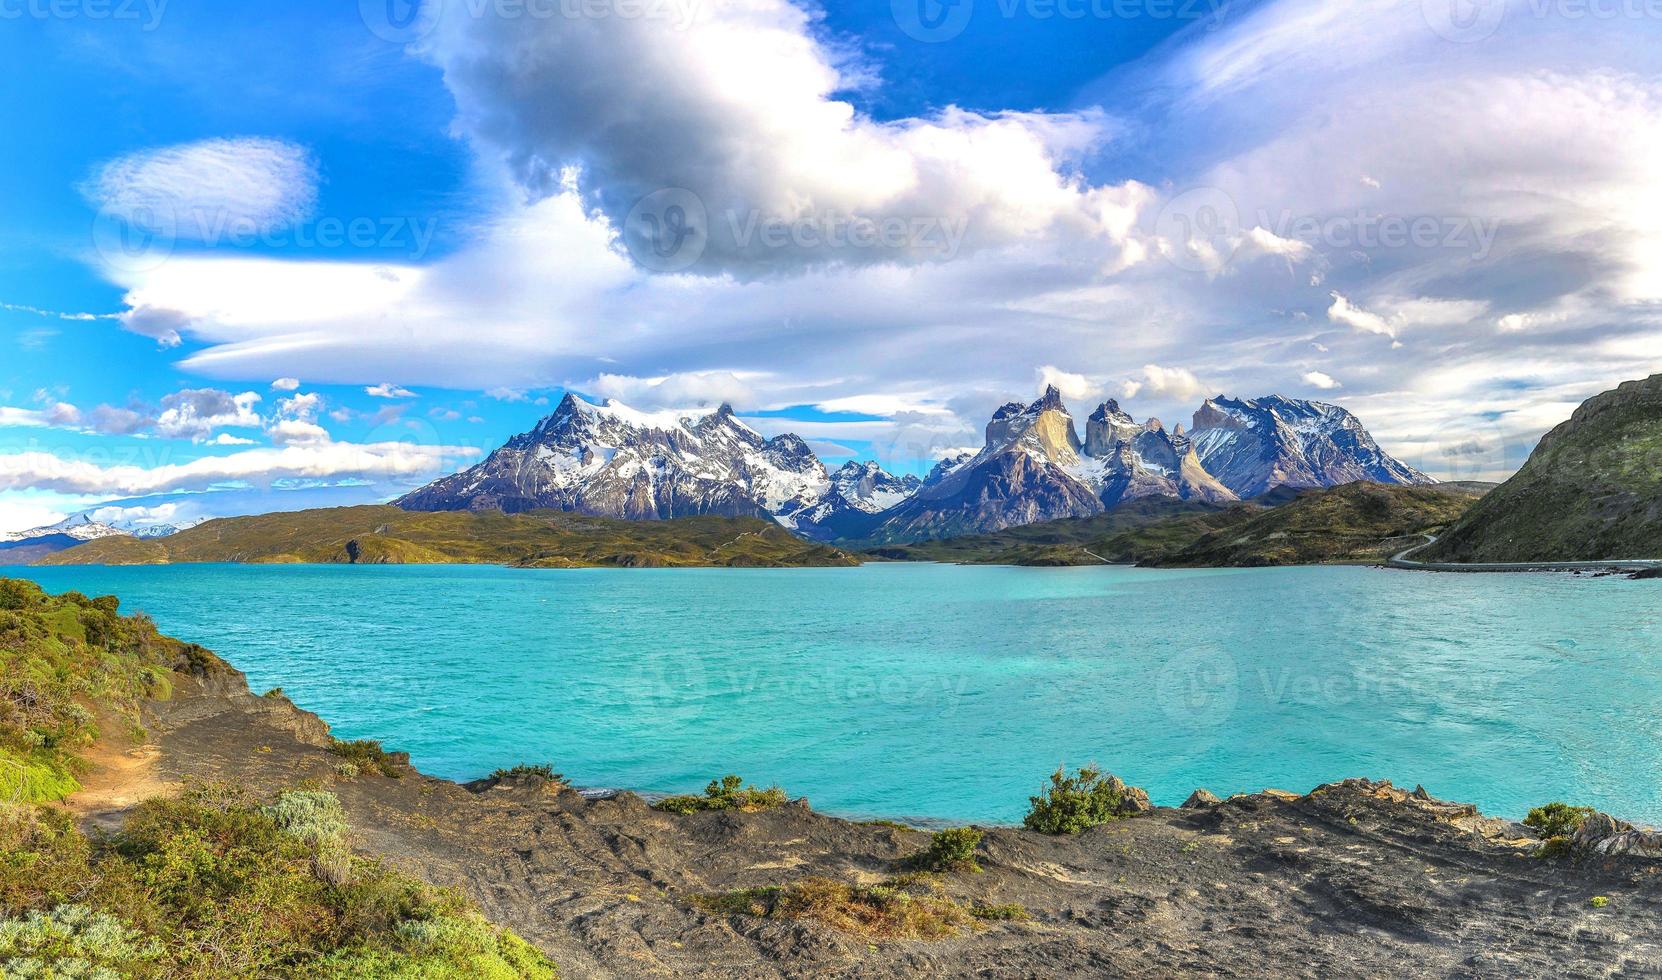 Visualizza su cerro paine Grande e Lago pehoe nel patagonia foto